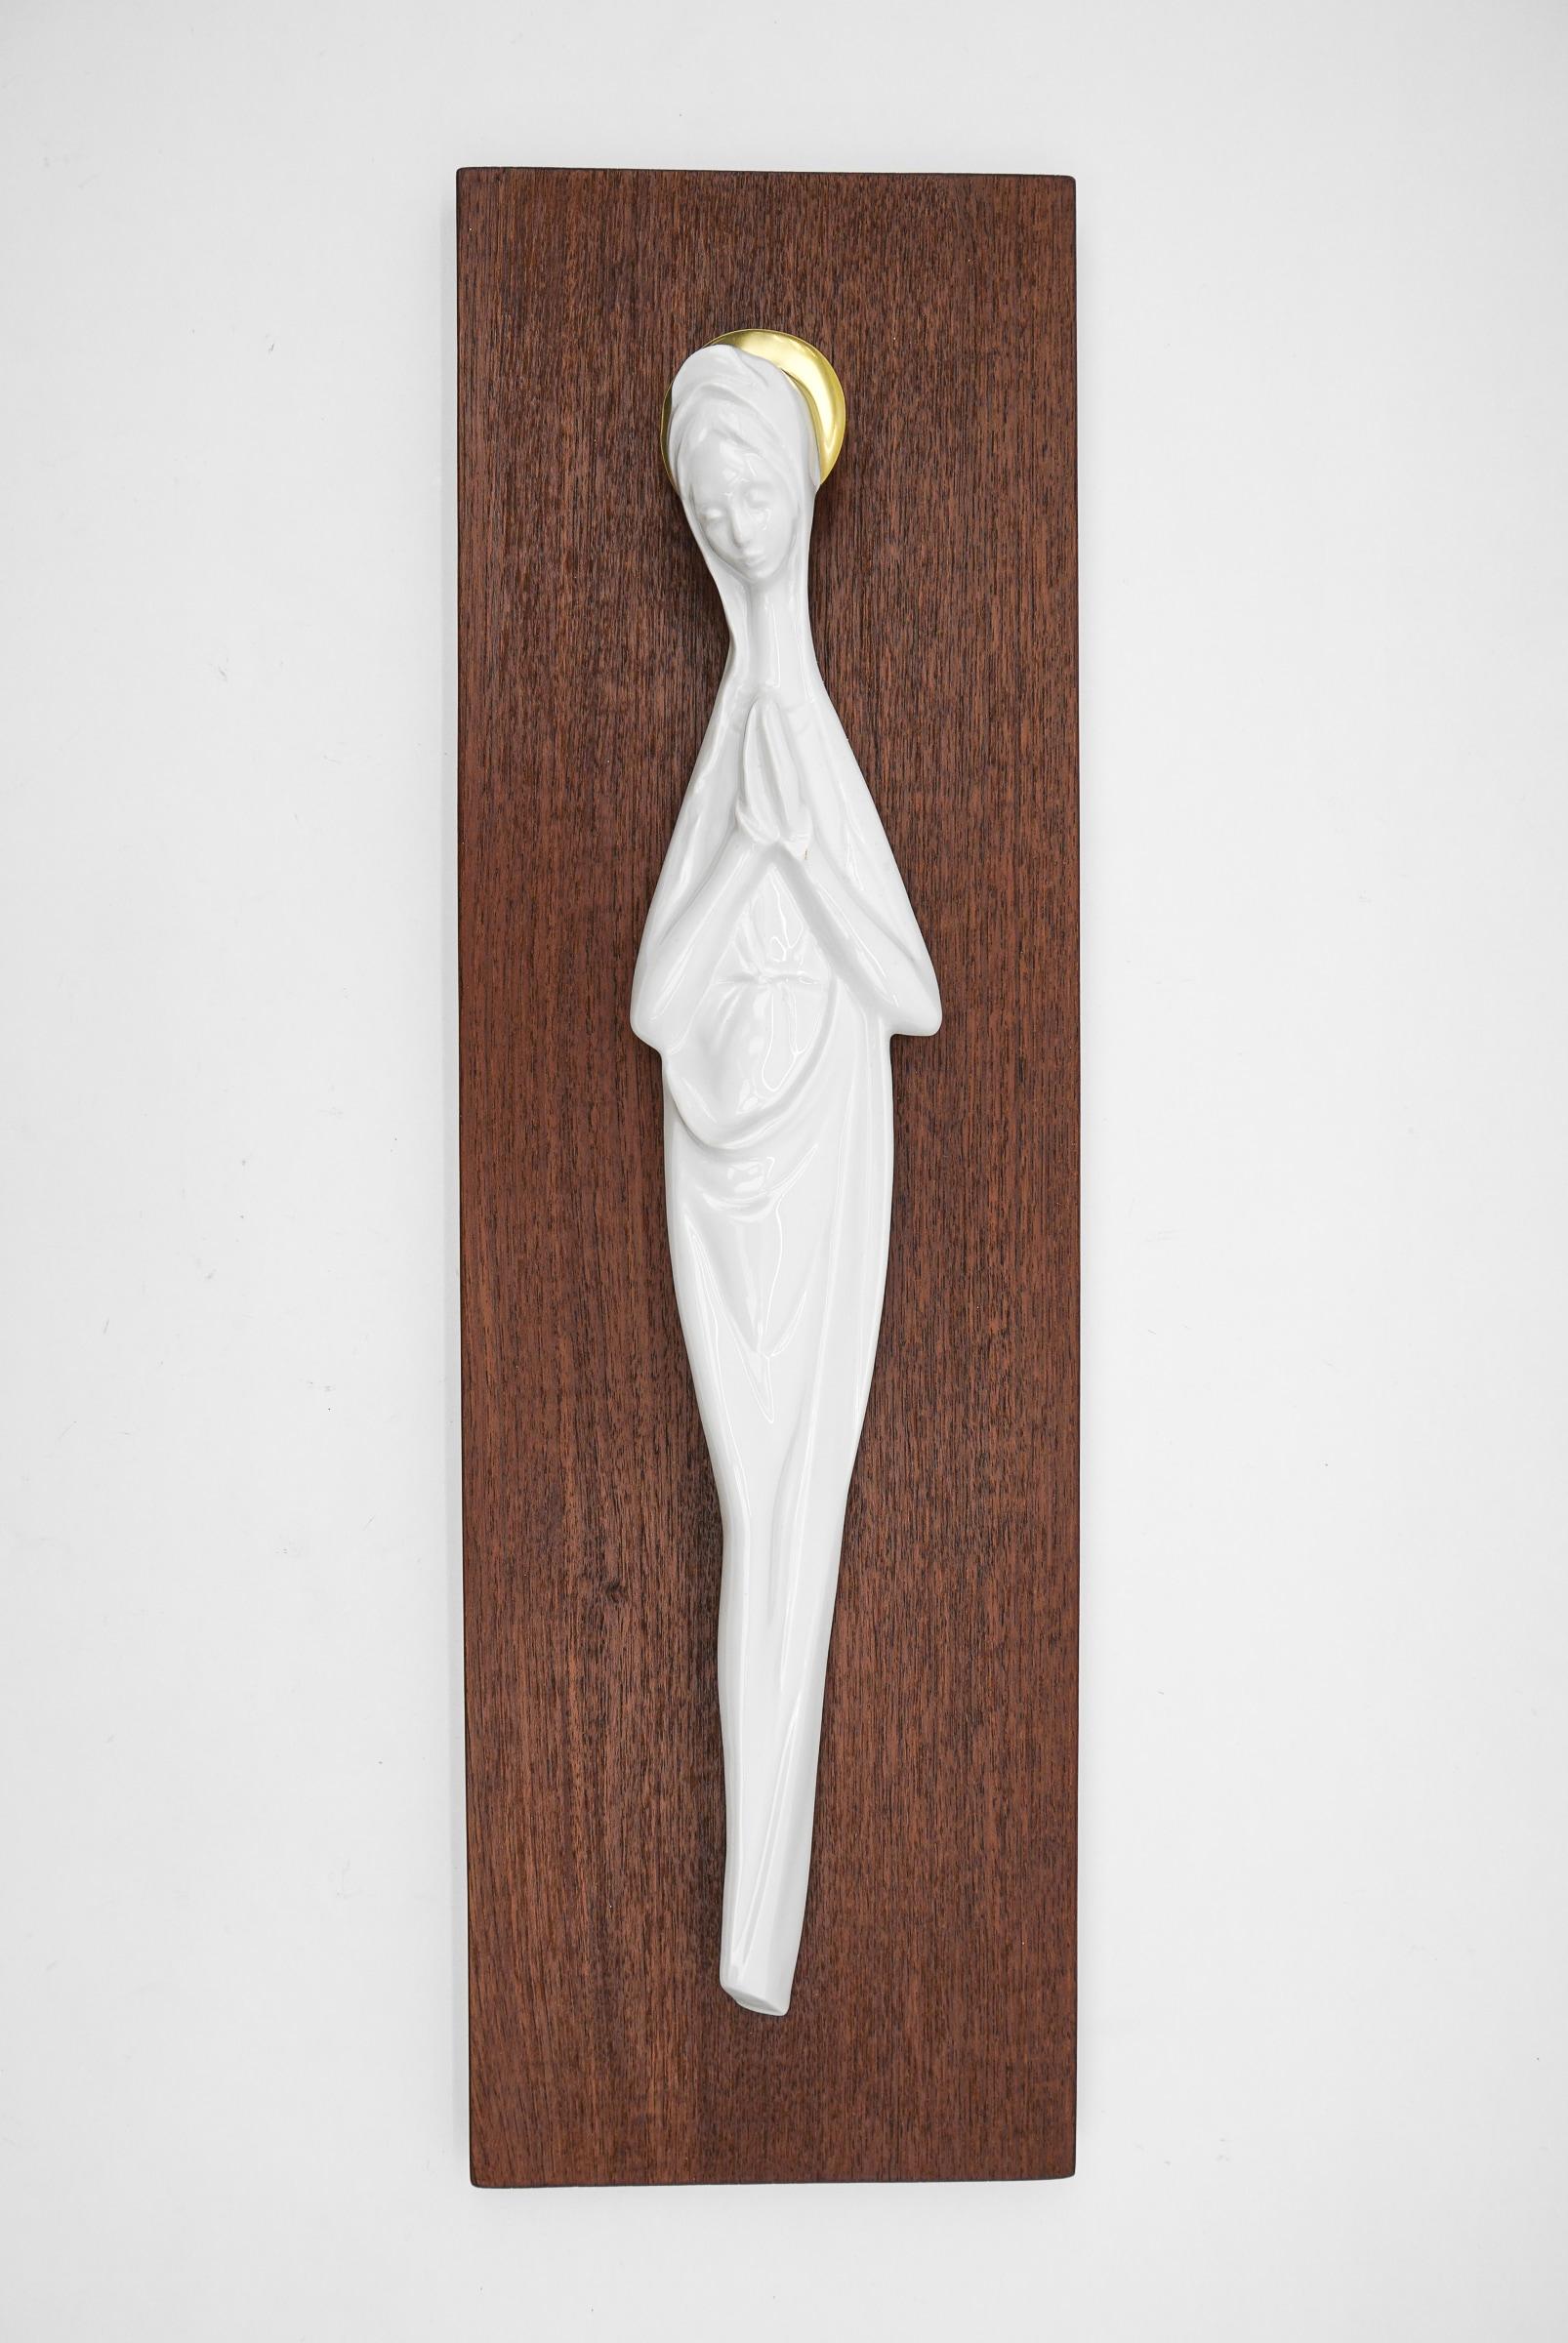 Skandinavische Madonna aus weißem, handgeformtem Porzellan auf Teakholzplatte, 1960er Jahre.

Das weiße Porzellan bildet einen wunderbaren Kontrast zum Teakholz. Perfekt geformt, sehr zart und ausdrucksstark. 

Die Teaktafel hat die Maße: Breite